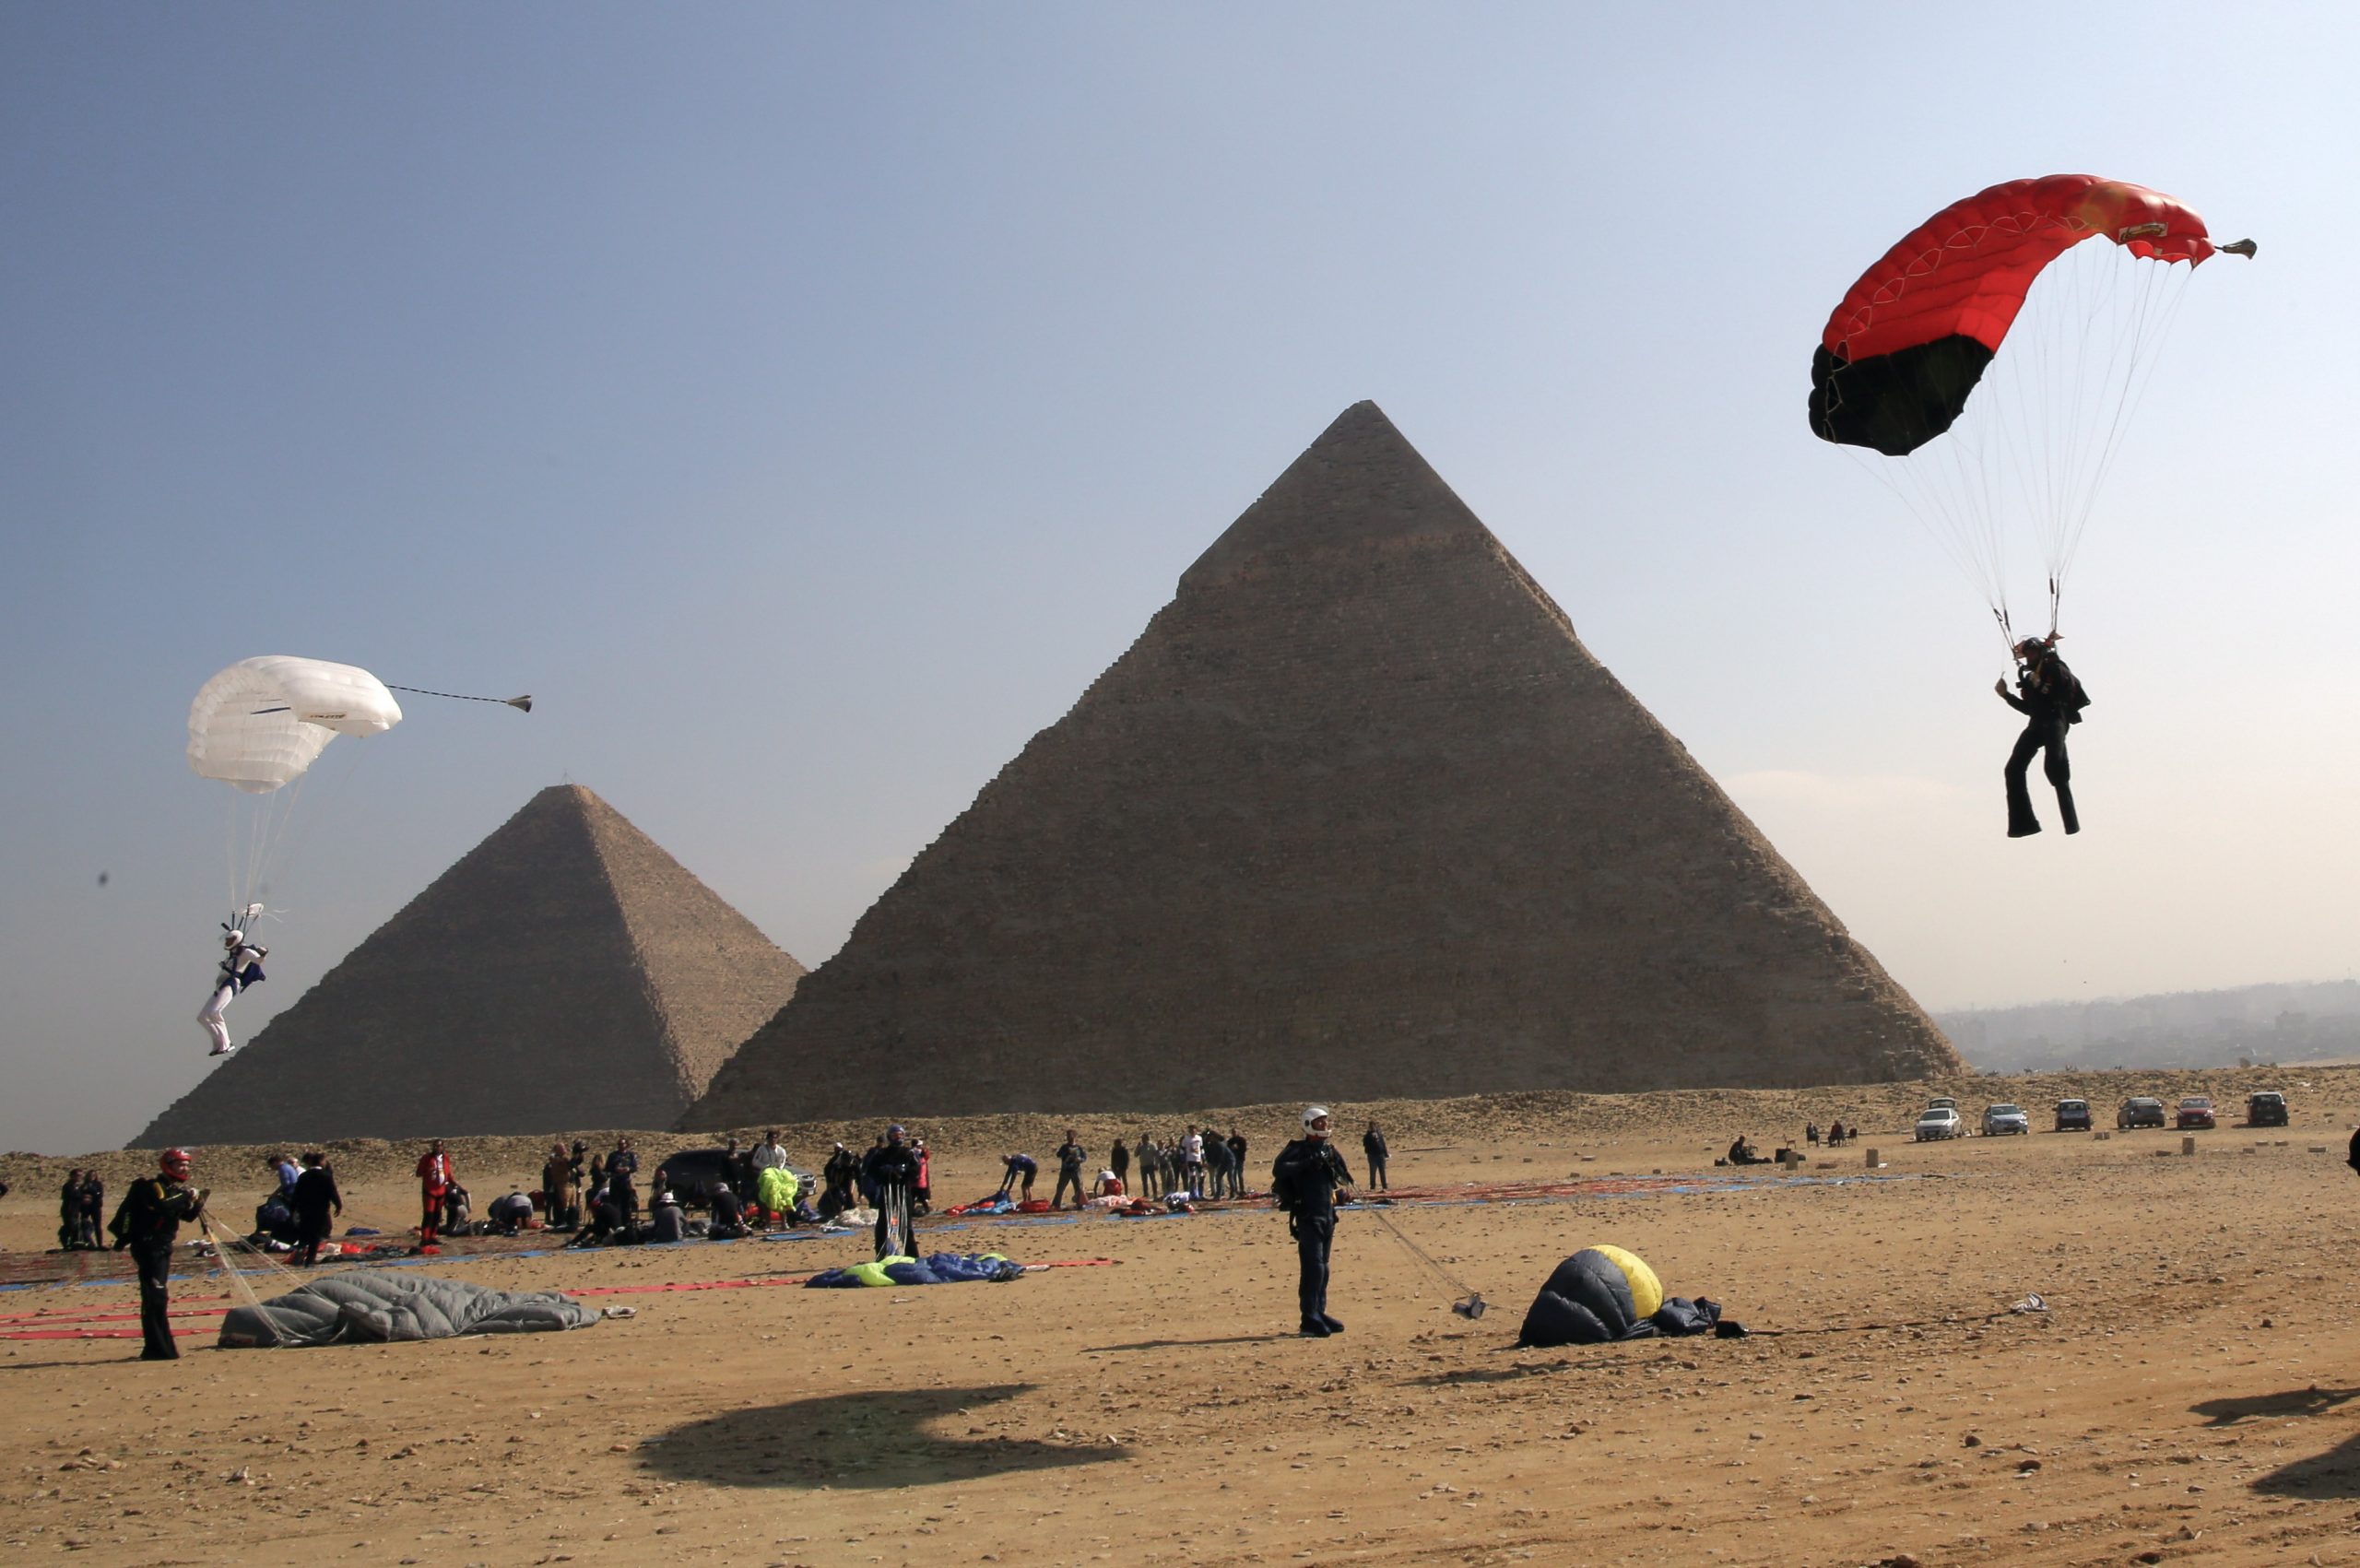 Η Αίγυπτος δεύτερη μεγαλύτερη οικονομία στον αραβικό κόσμο